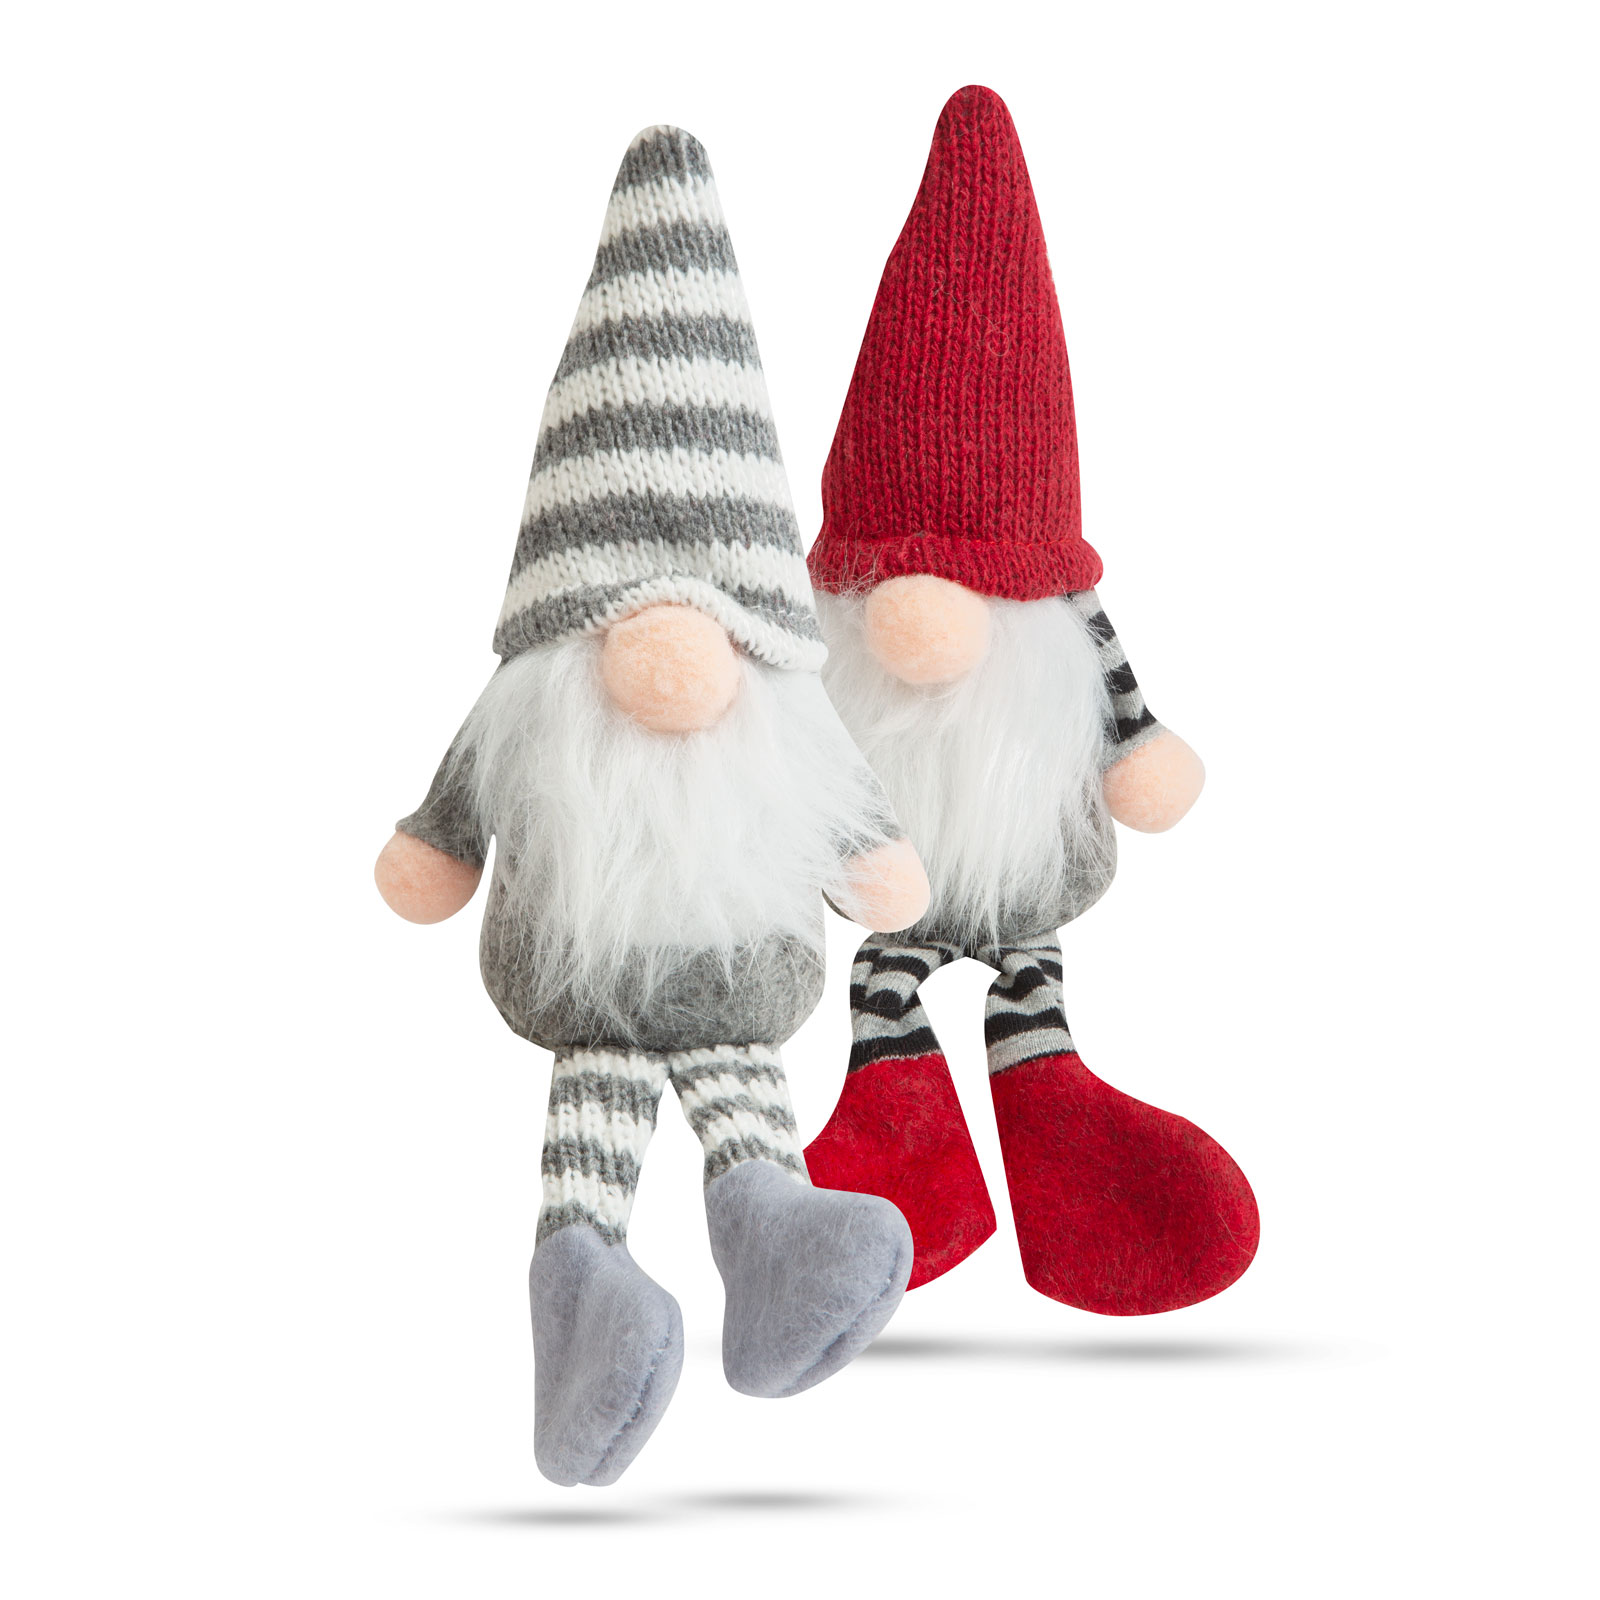 Crăciun cu picioare de spiriduș scandinav - 2 tipuri - 20 cm thumb